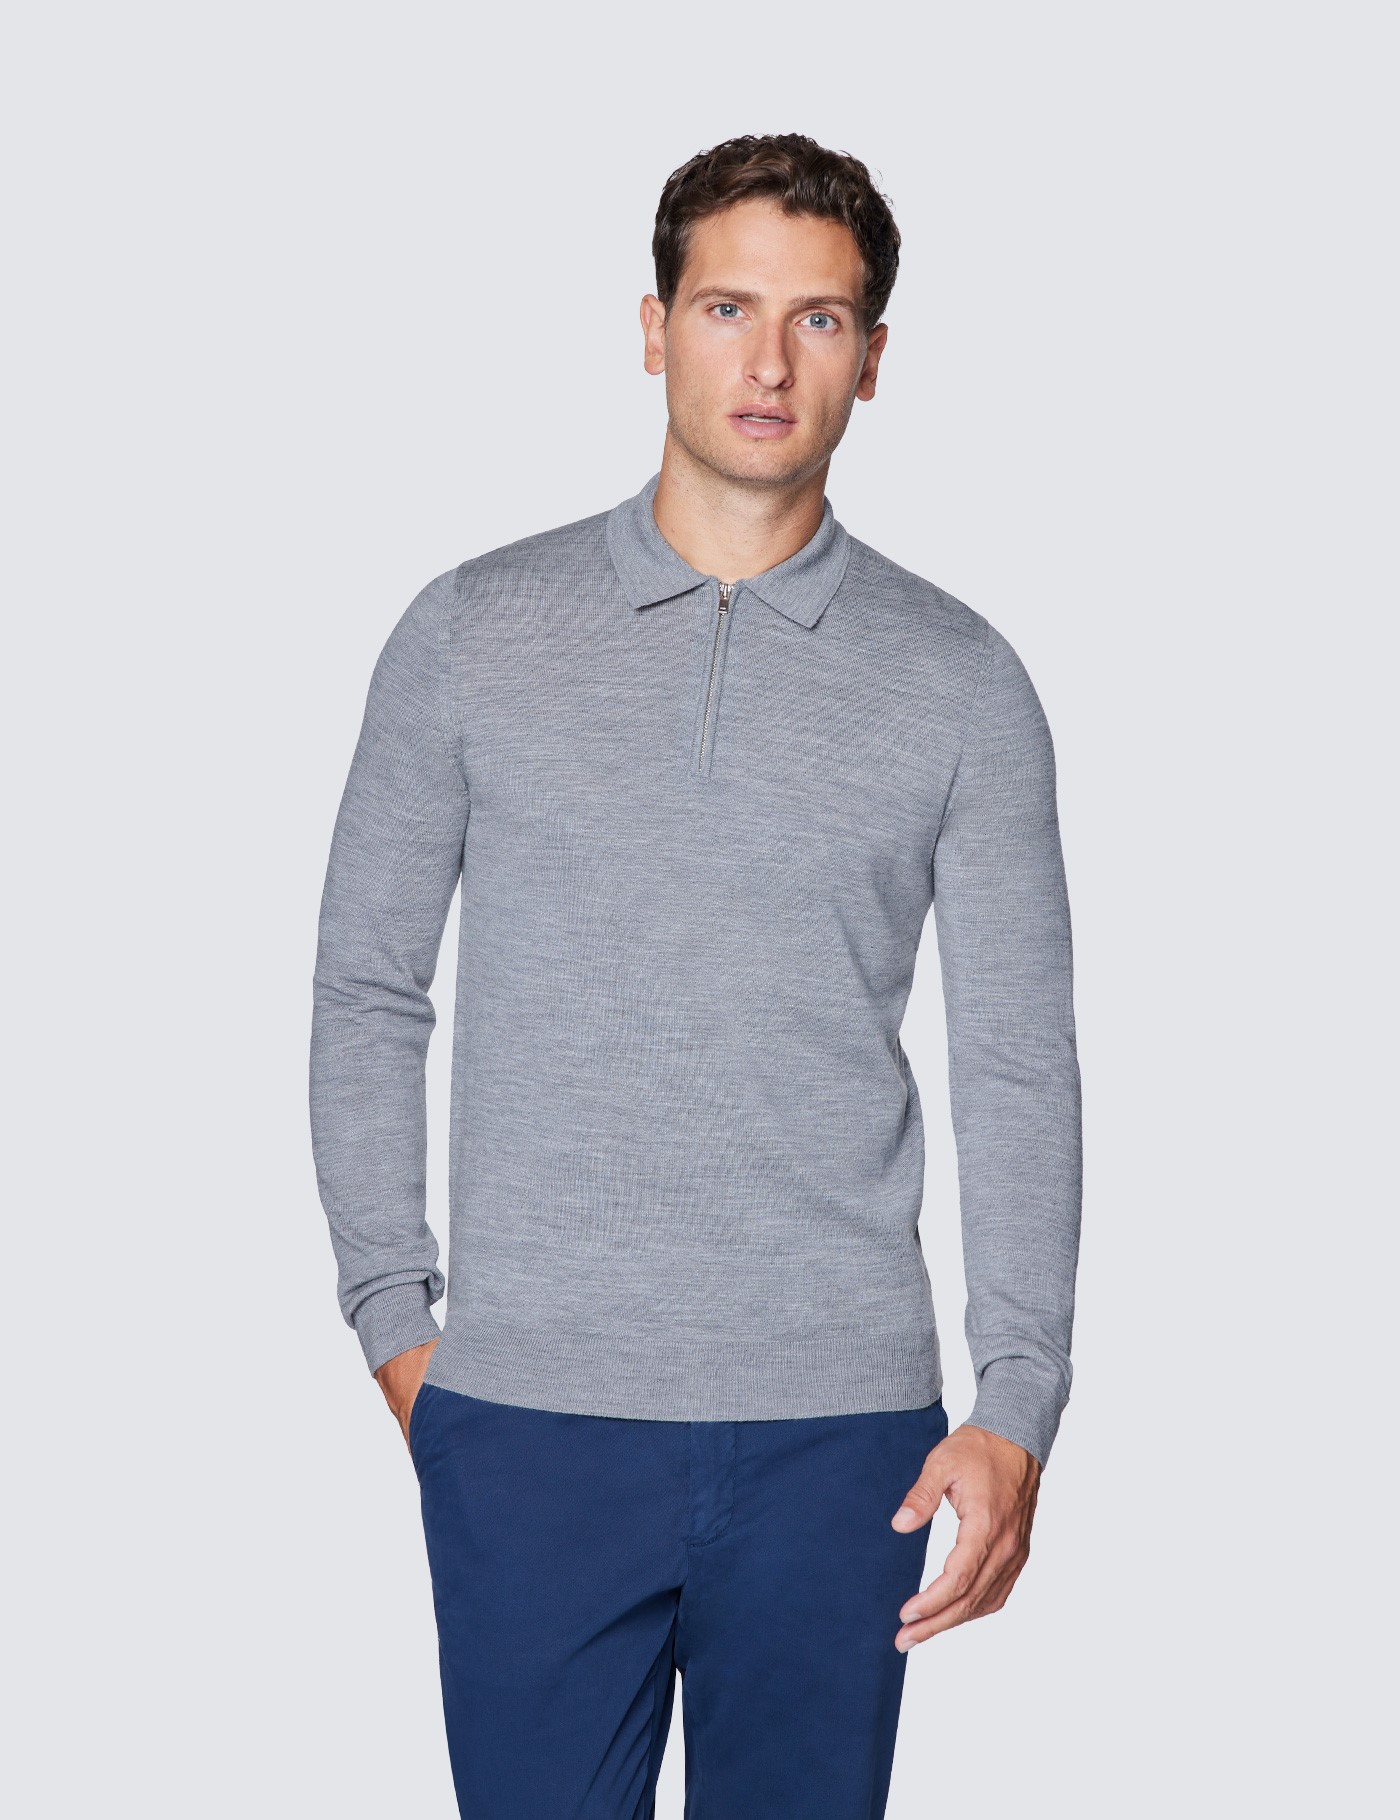 Zip Neck Men’s Fine Merino Wool Zip Neck Sweater in Grey| Hawes & Curtis